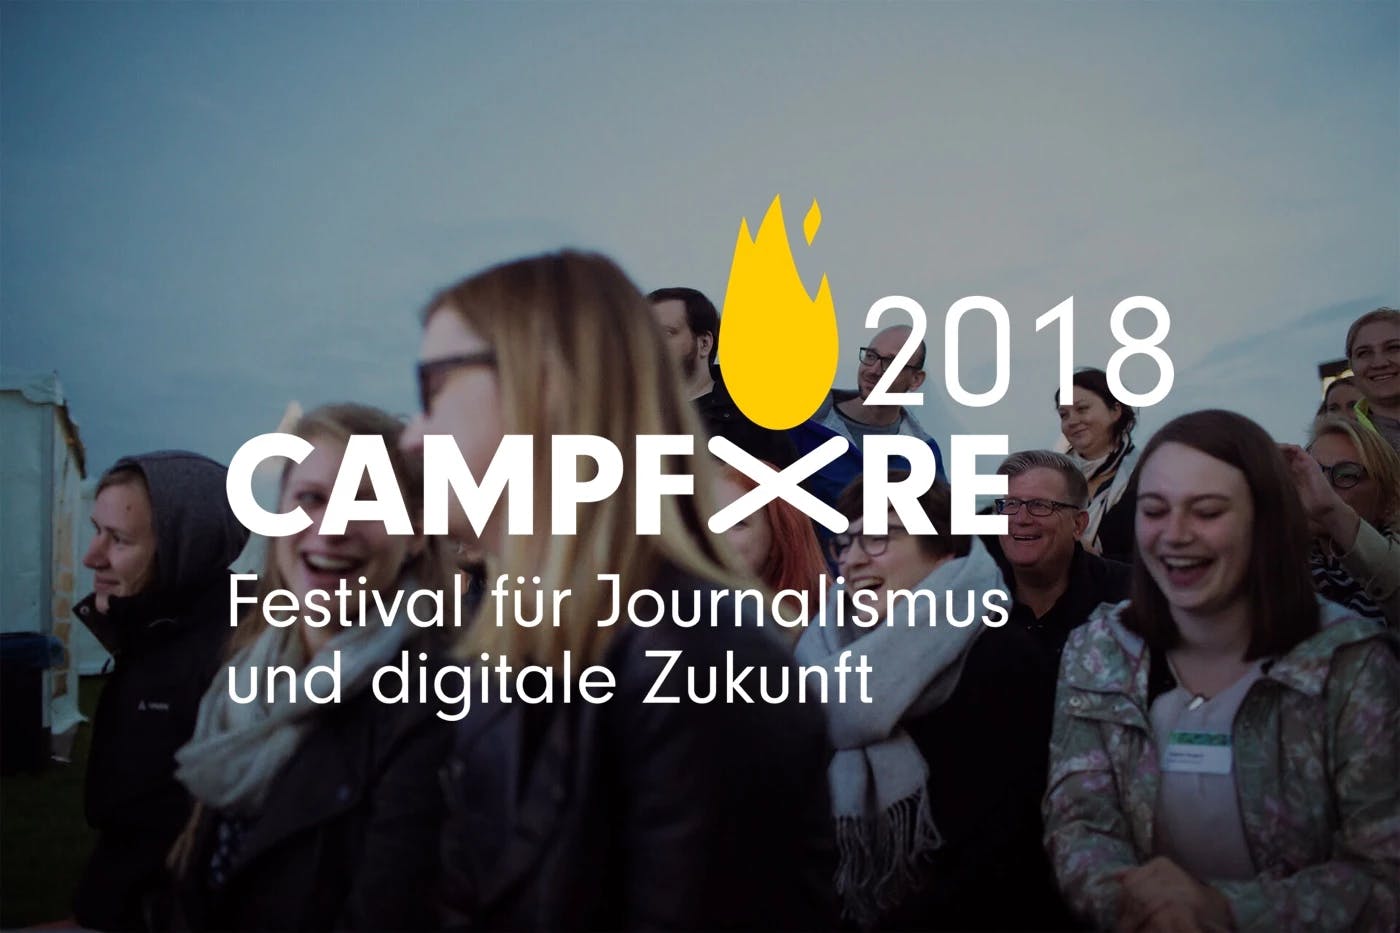 Campfire 2018 - Festival für Journalismus und digitale Zukunft